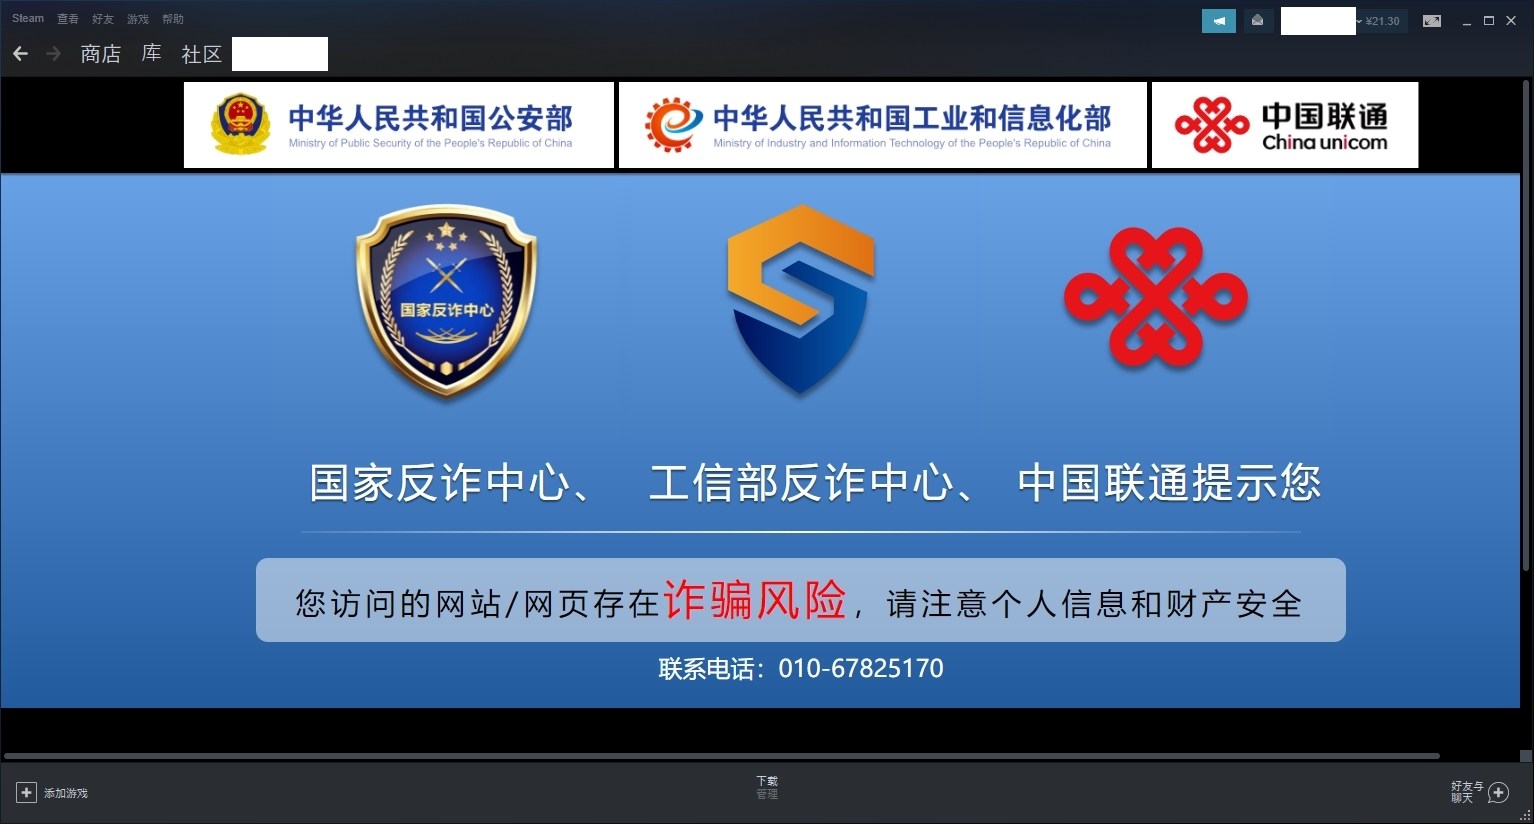 情報 喜報 Steam商店在中國已被封禁 更新 網頁被公安劫持 場外休憩區哈啦板 巴哈姆特